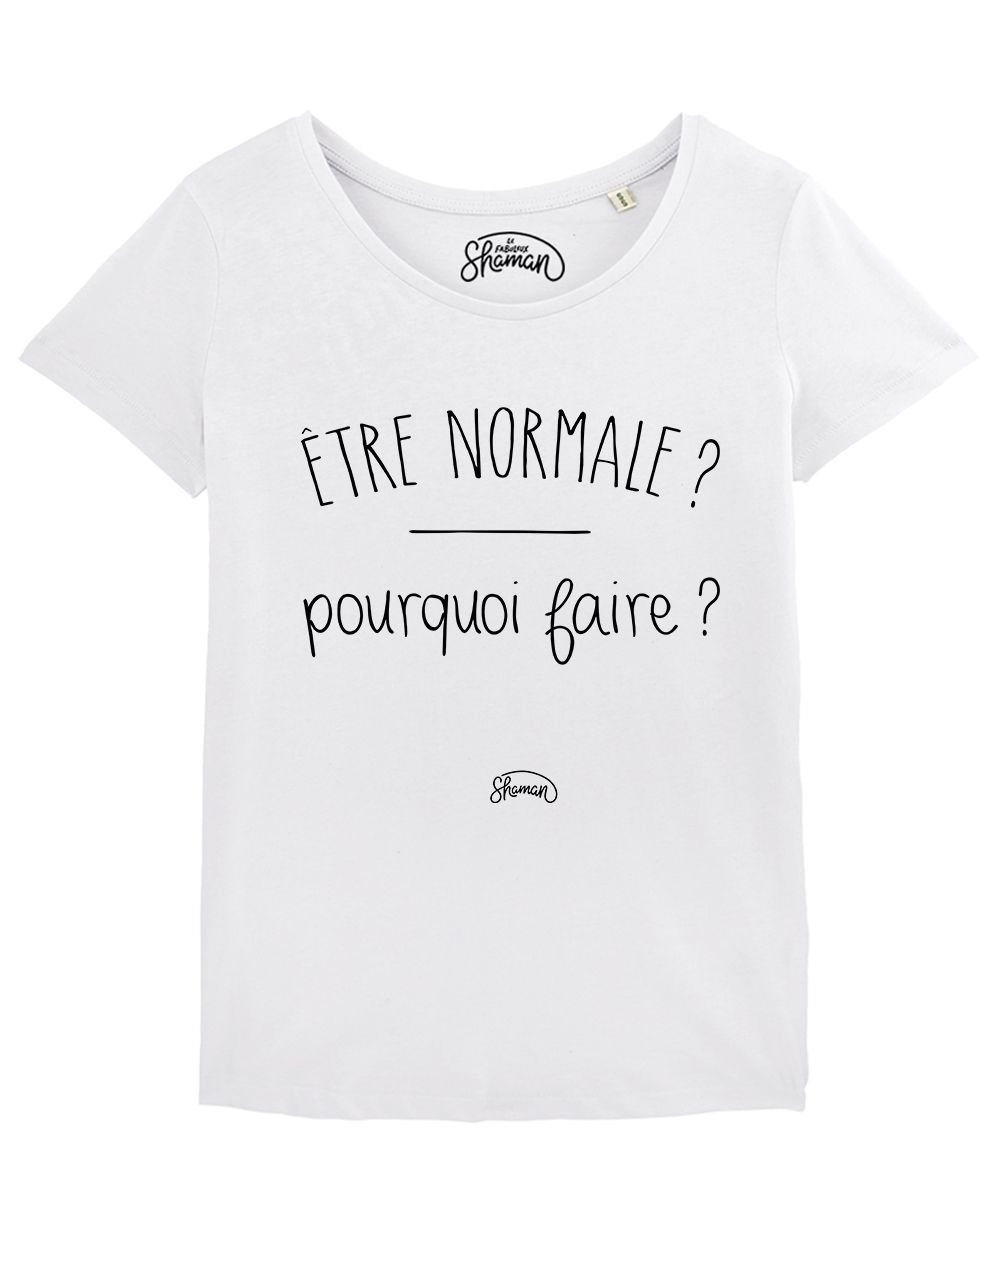 T-shirt "Être normale pour quoi faire ?"